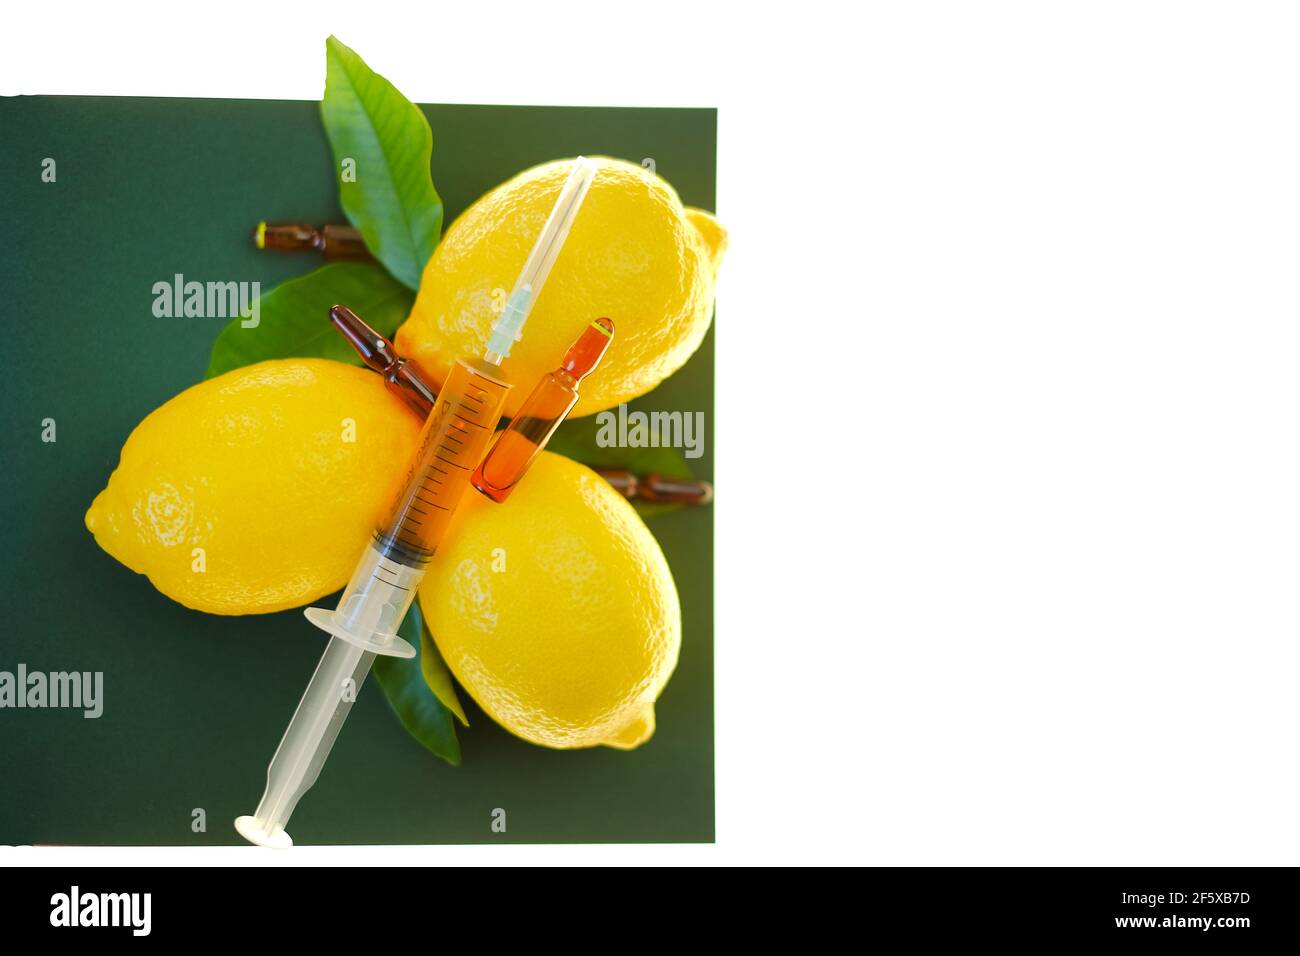 Siero di vitamina C. con vitamina C. ampolle di vetro da vicino, siringa con soluzione iniettabile e limoni di frutta su fondo verde, isolati su fondo bianco Foto Stock